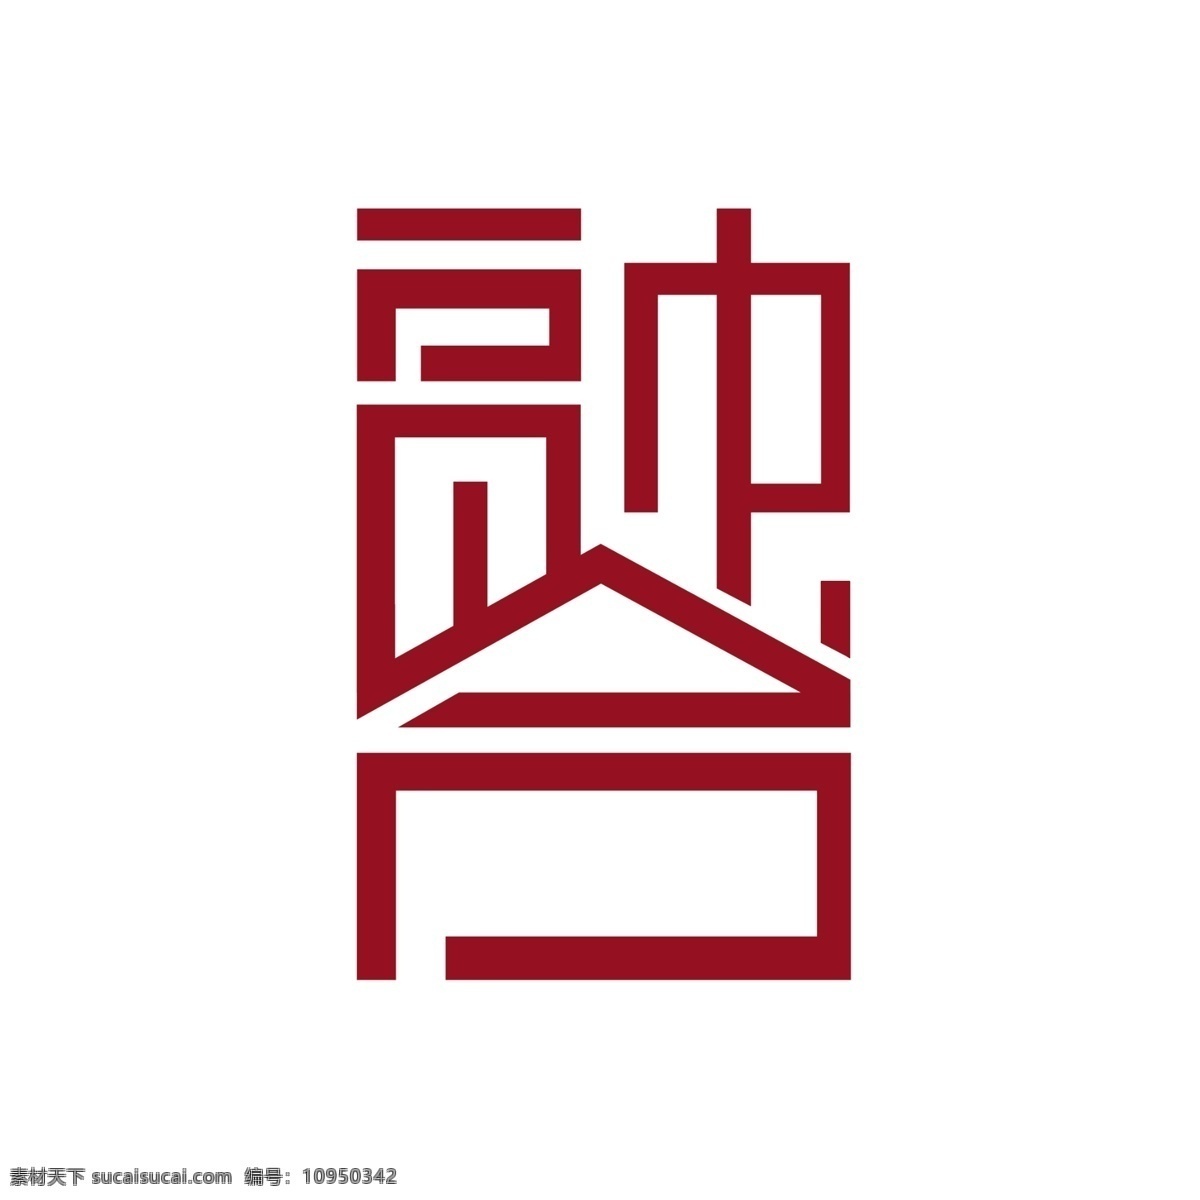 融合logo 企业 汉字 组合 形象 标识 标志图标 logo 标志